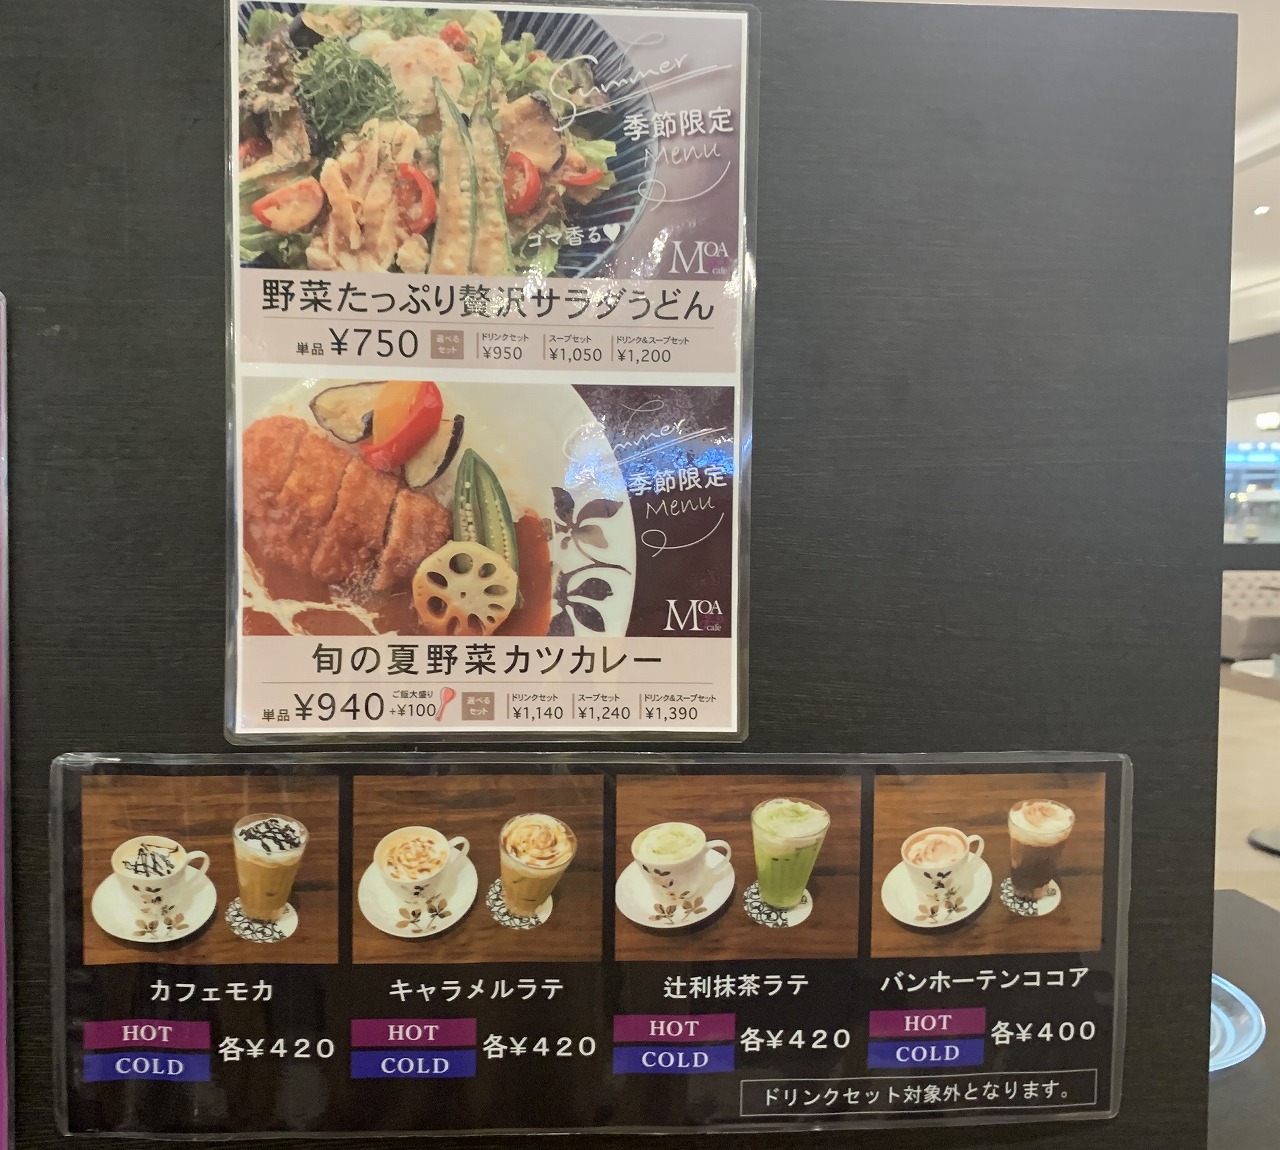 ポートアイランド「MOA cafe 東京インテリア神戸店」